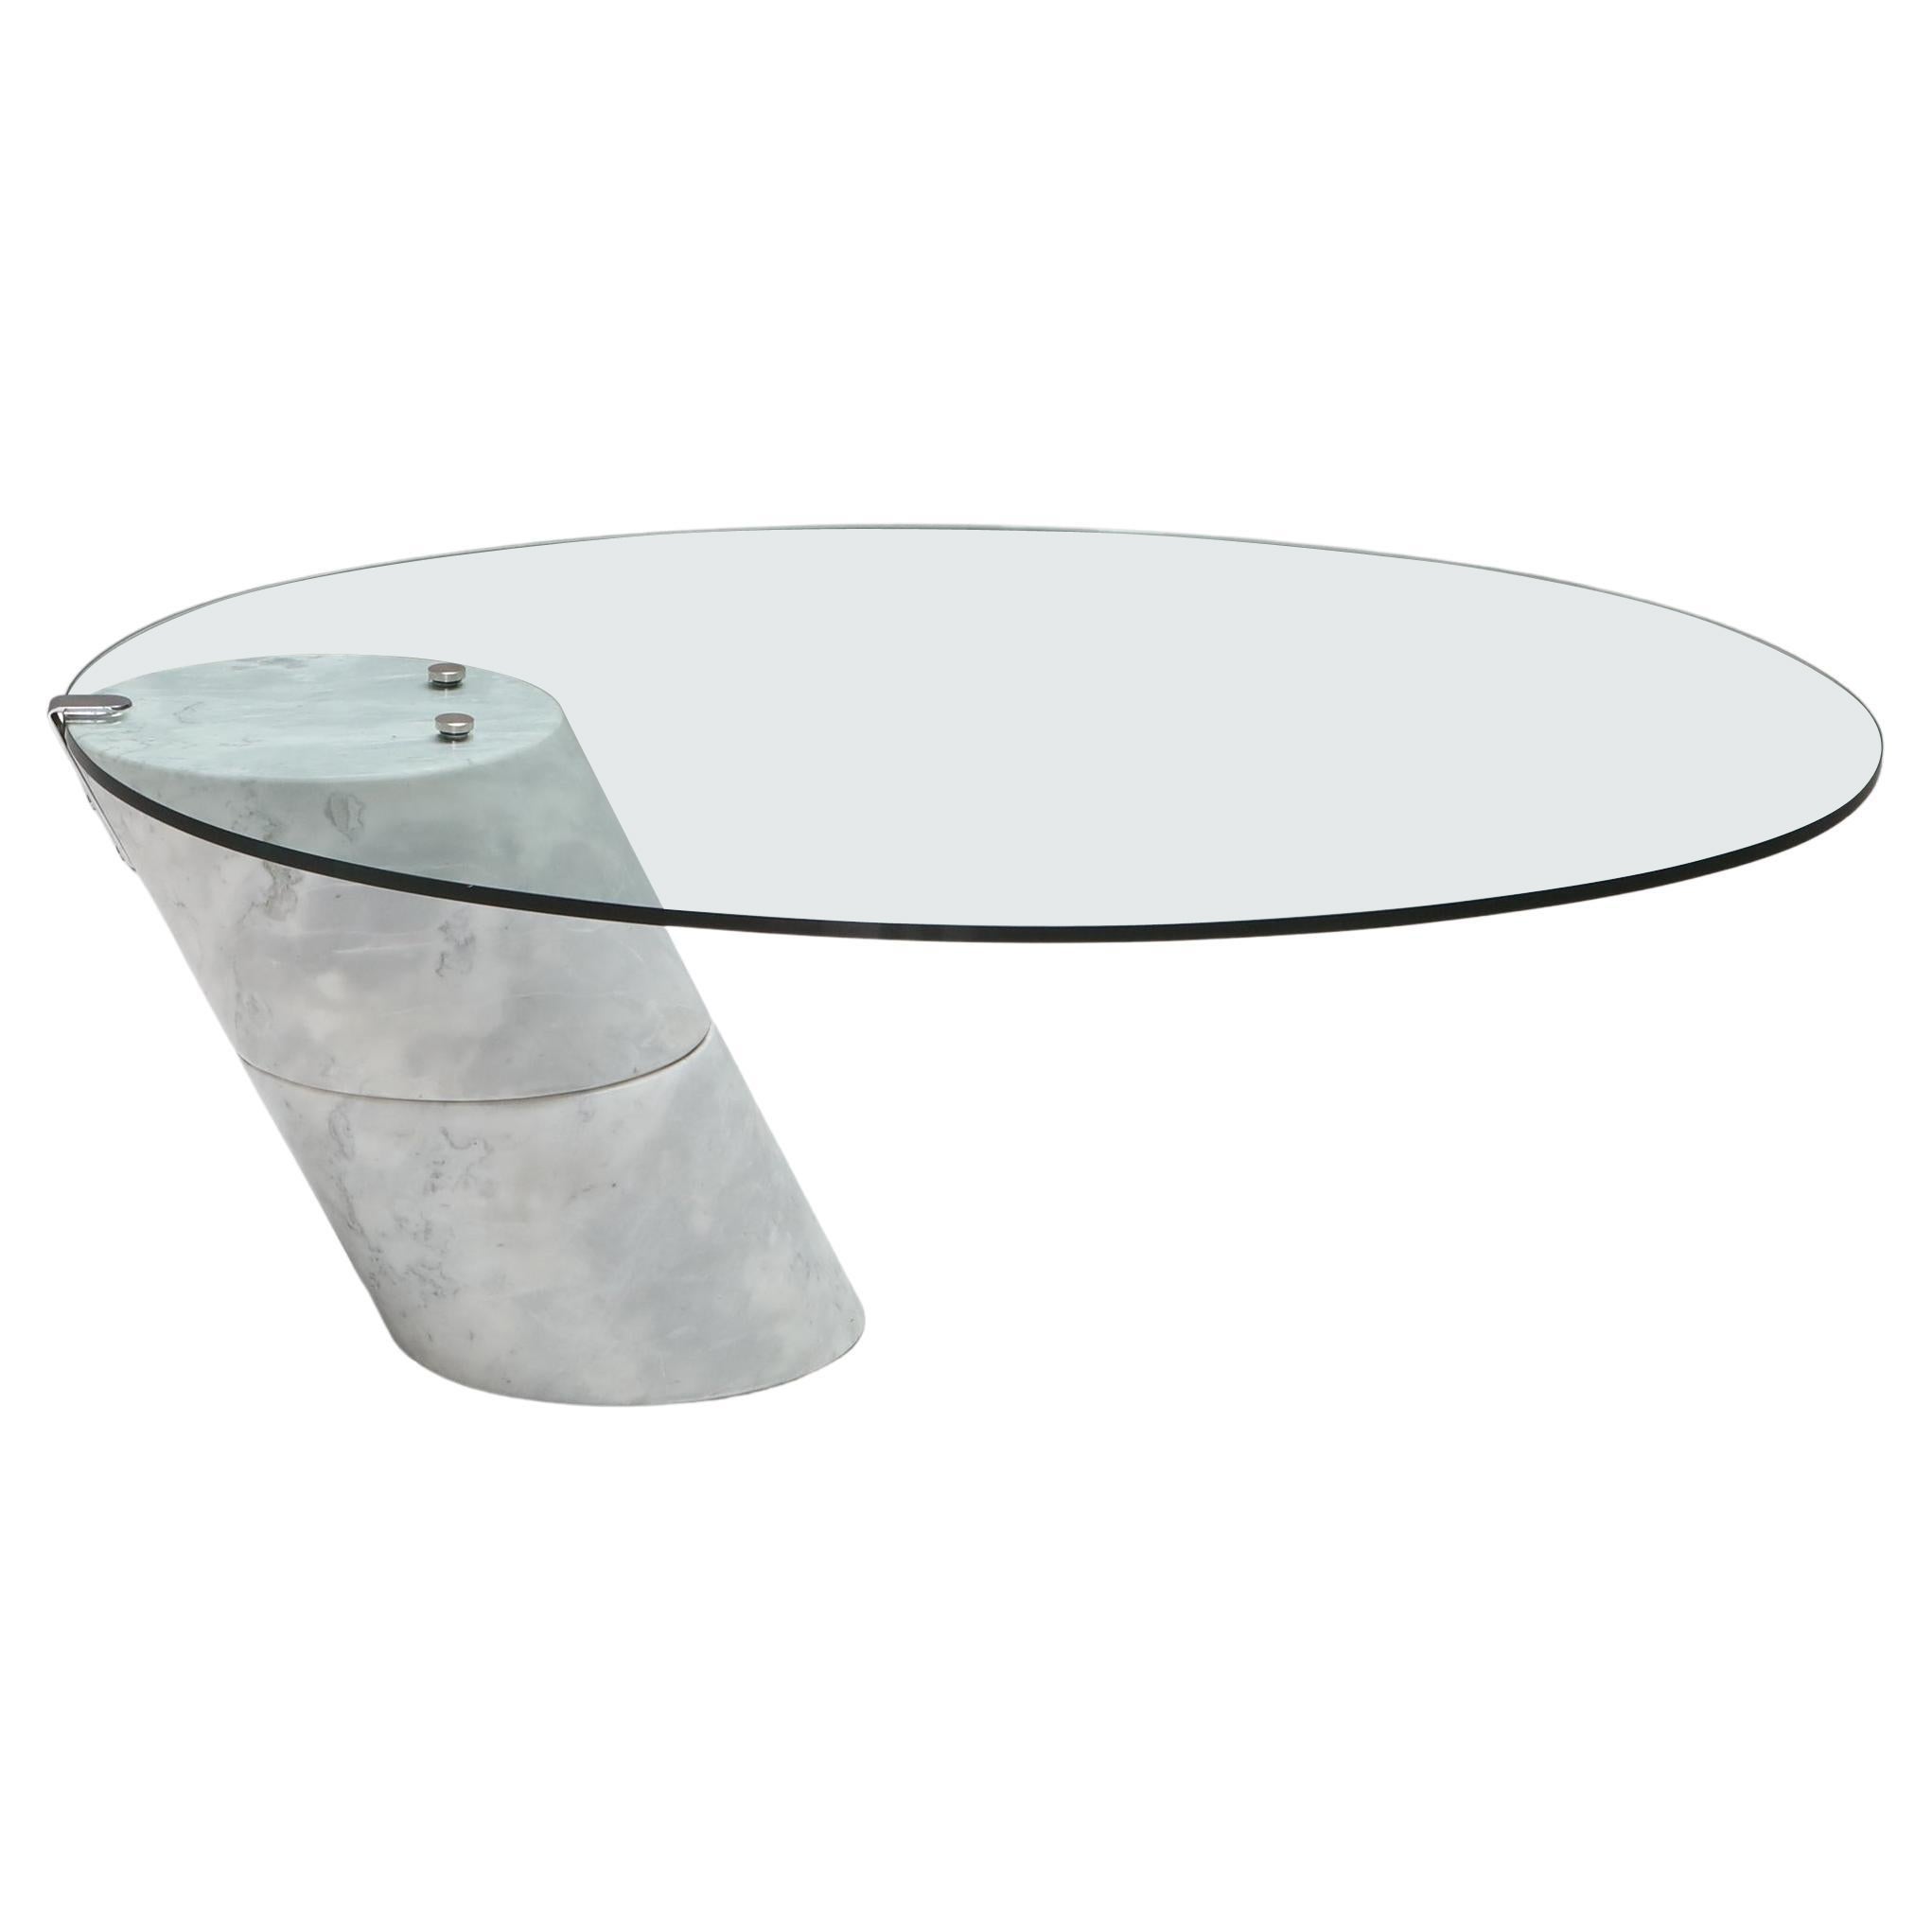 Glass Carrara Marble Coffee Table, K1000, Team Form AG, Ronald Schmitt, 1975